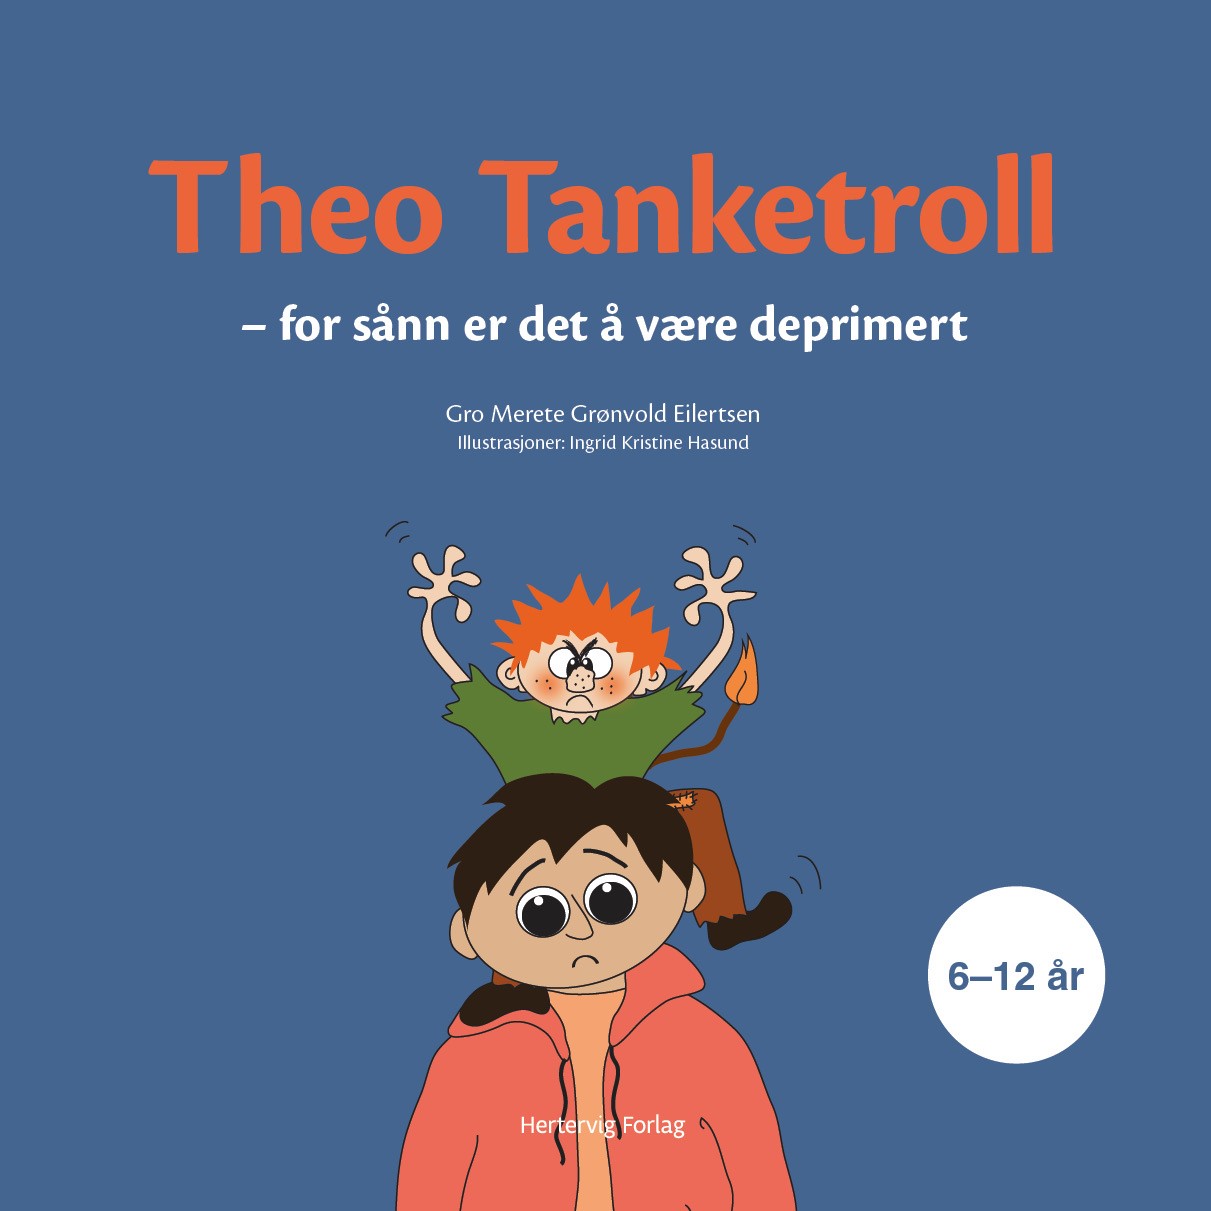 Se Theo Tanketroll – for sånn er det å være deprimert